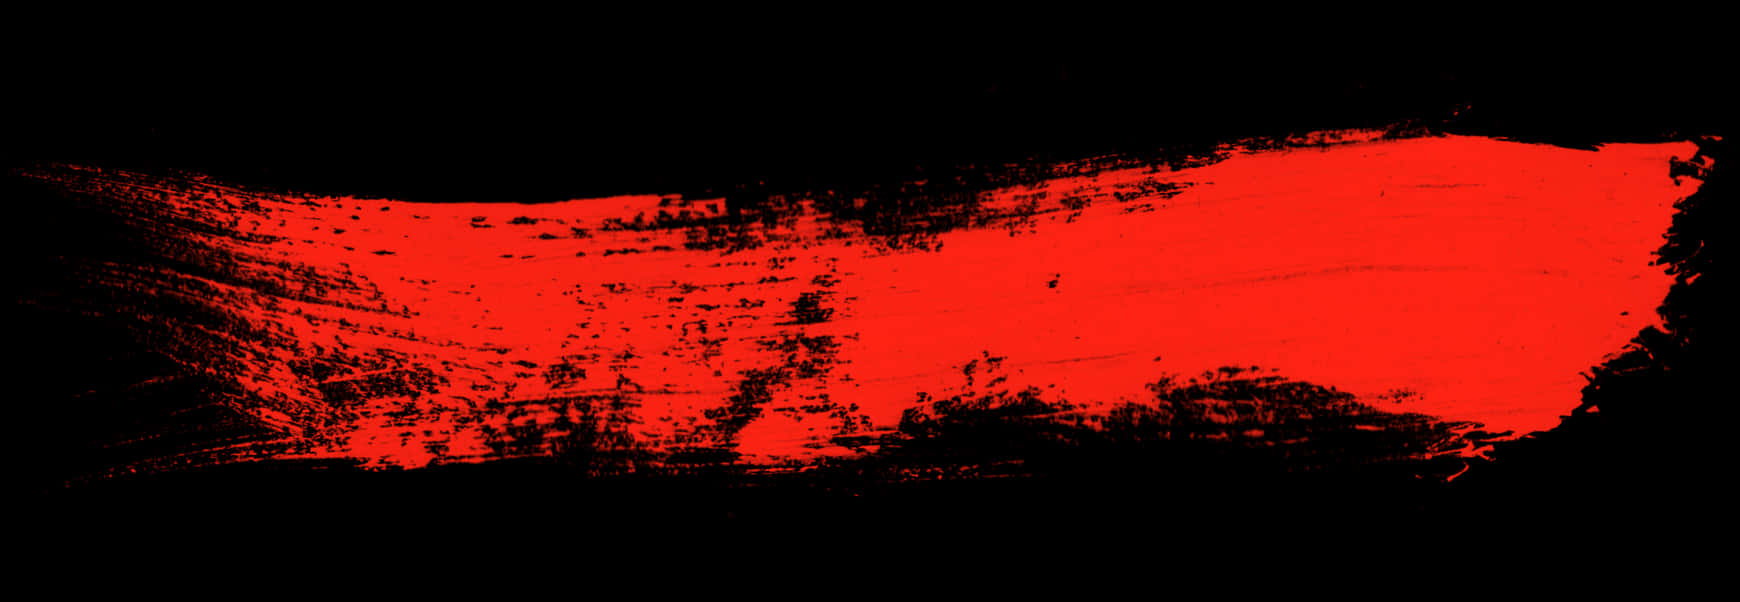 Vibrant_ Red_ Paint_ Stroke_on_ Black_ Background.jpg